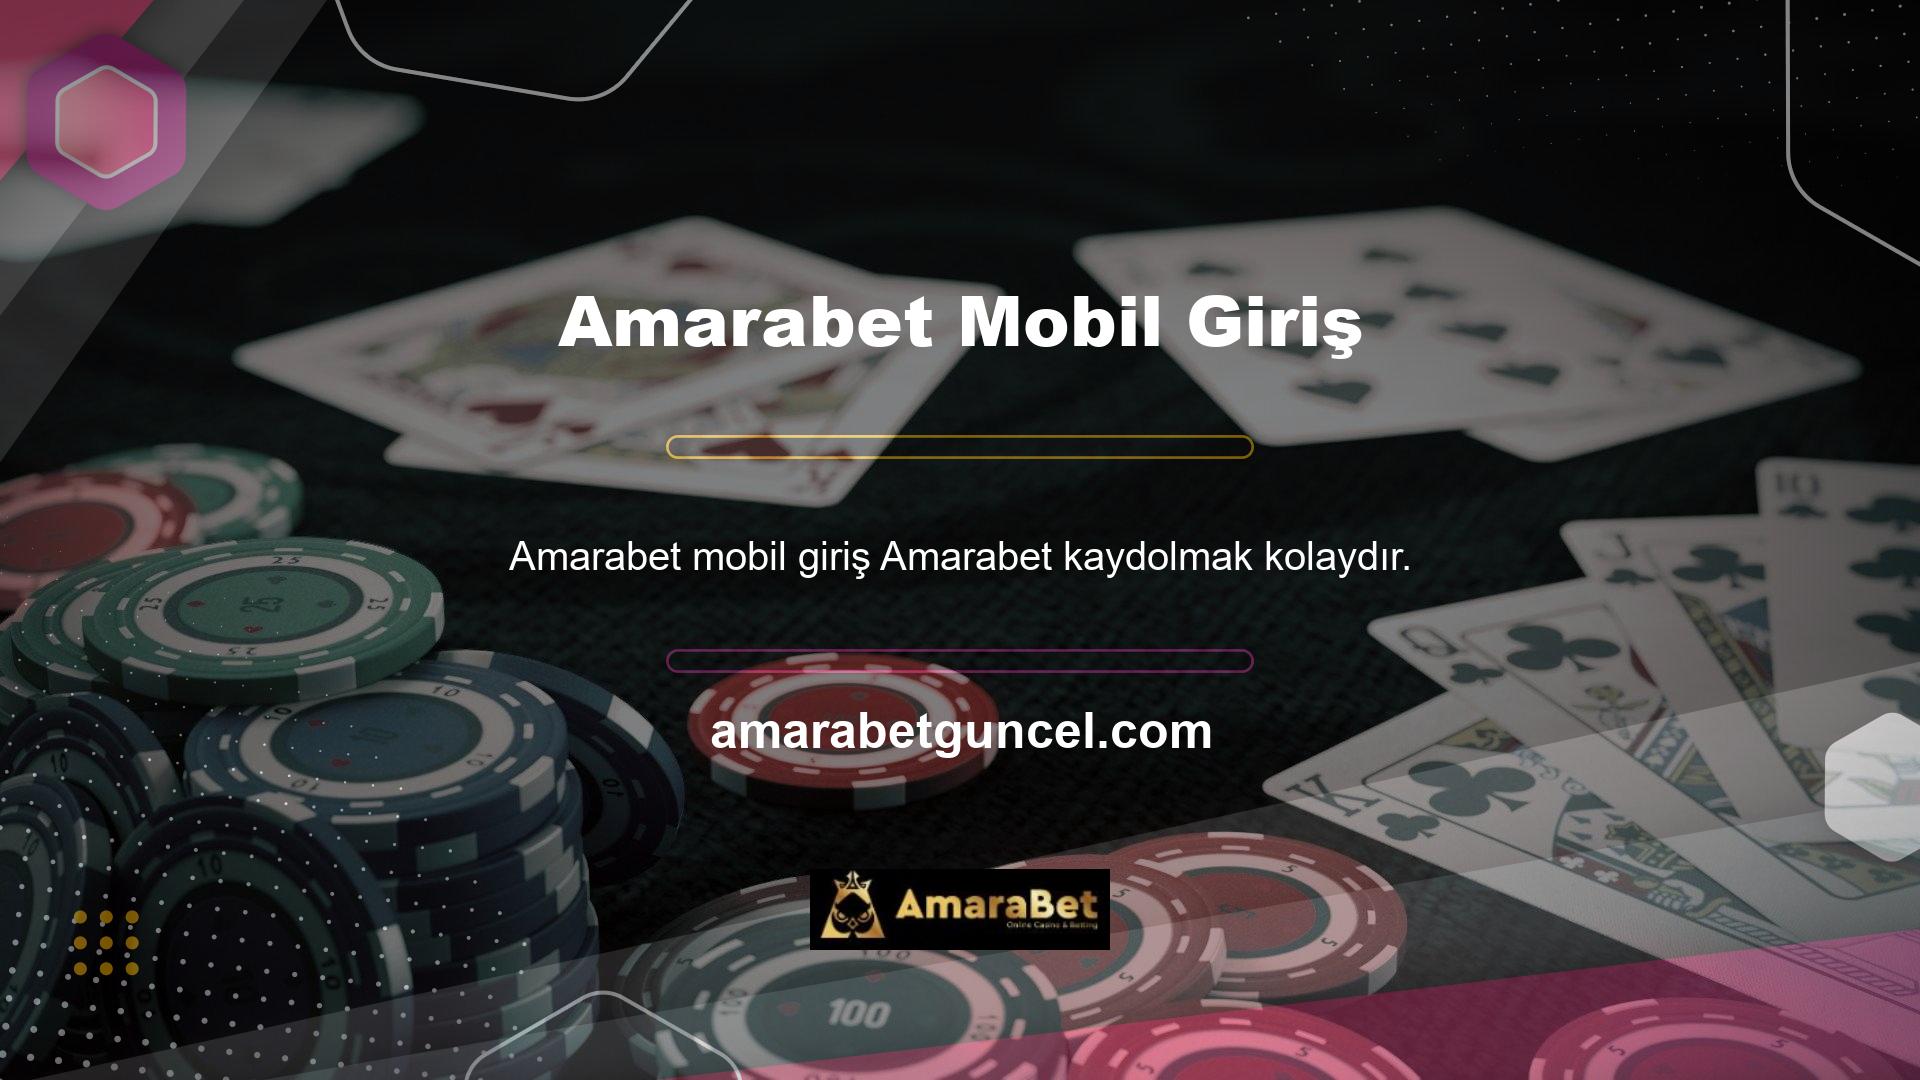 Amarabet, casino tutkunlarının siteye 7/24 erişebilmelerini sağlamak için çabalıyor ve mobil cihazınız üzerinden kaydolmak için iki farklı yol sunuyor